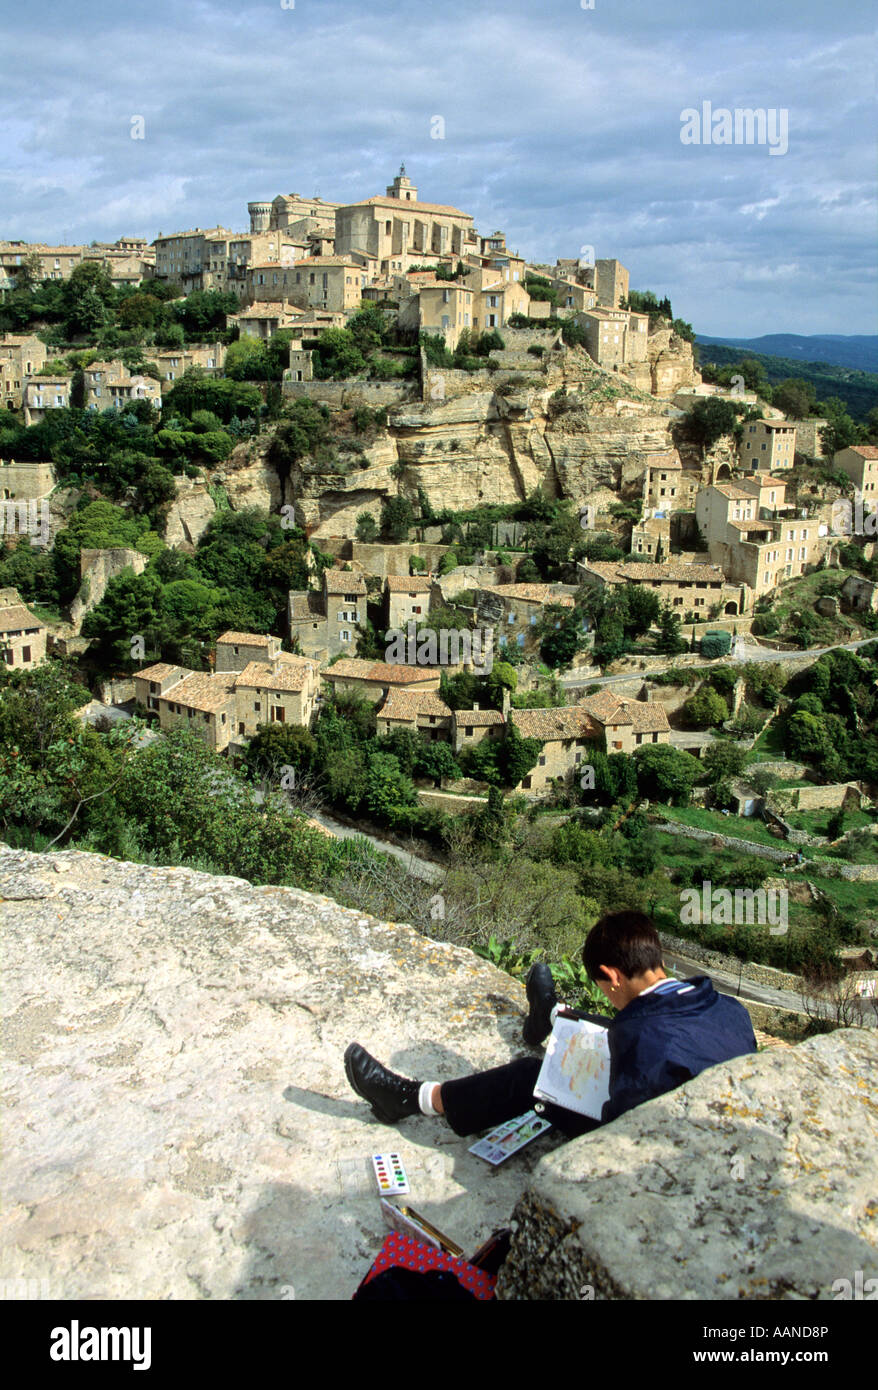 Village de Gordes, le Plateau du Vaucluse, Luberon, Provence, France Banque D'Images